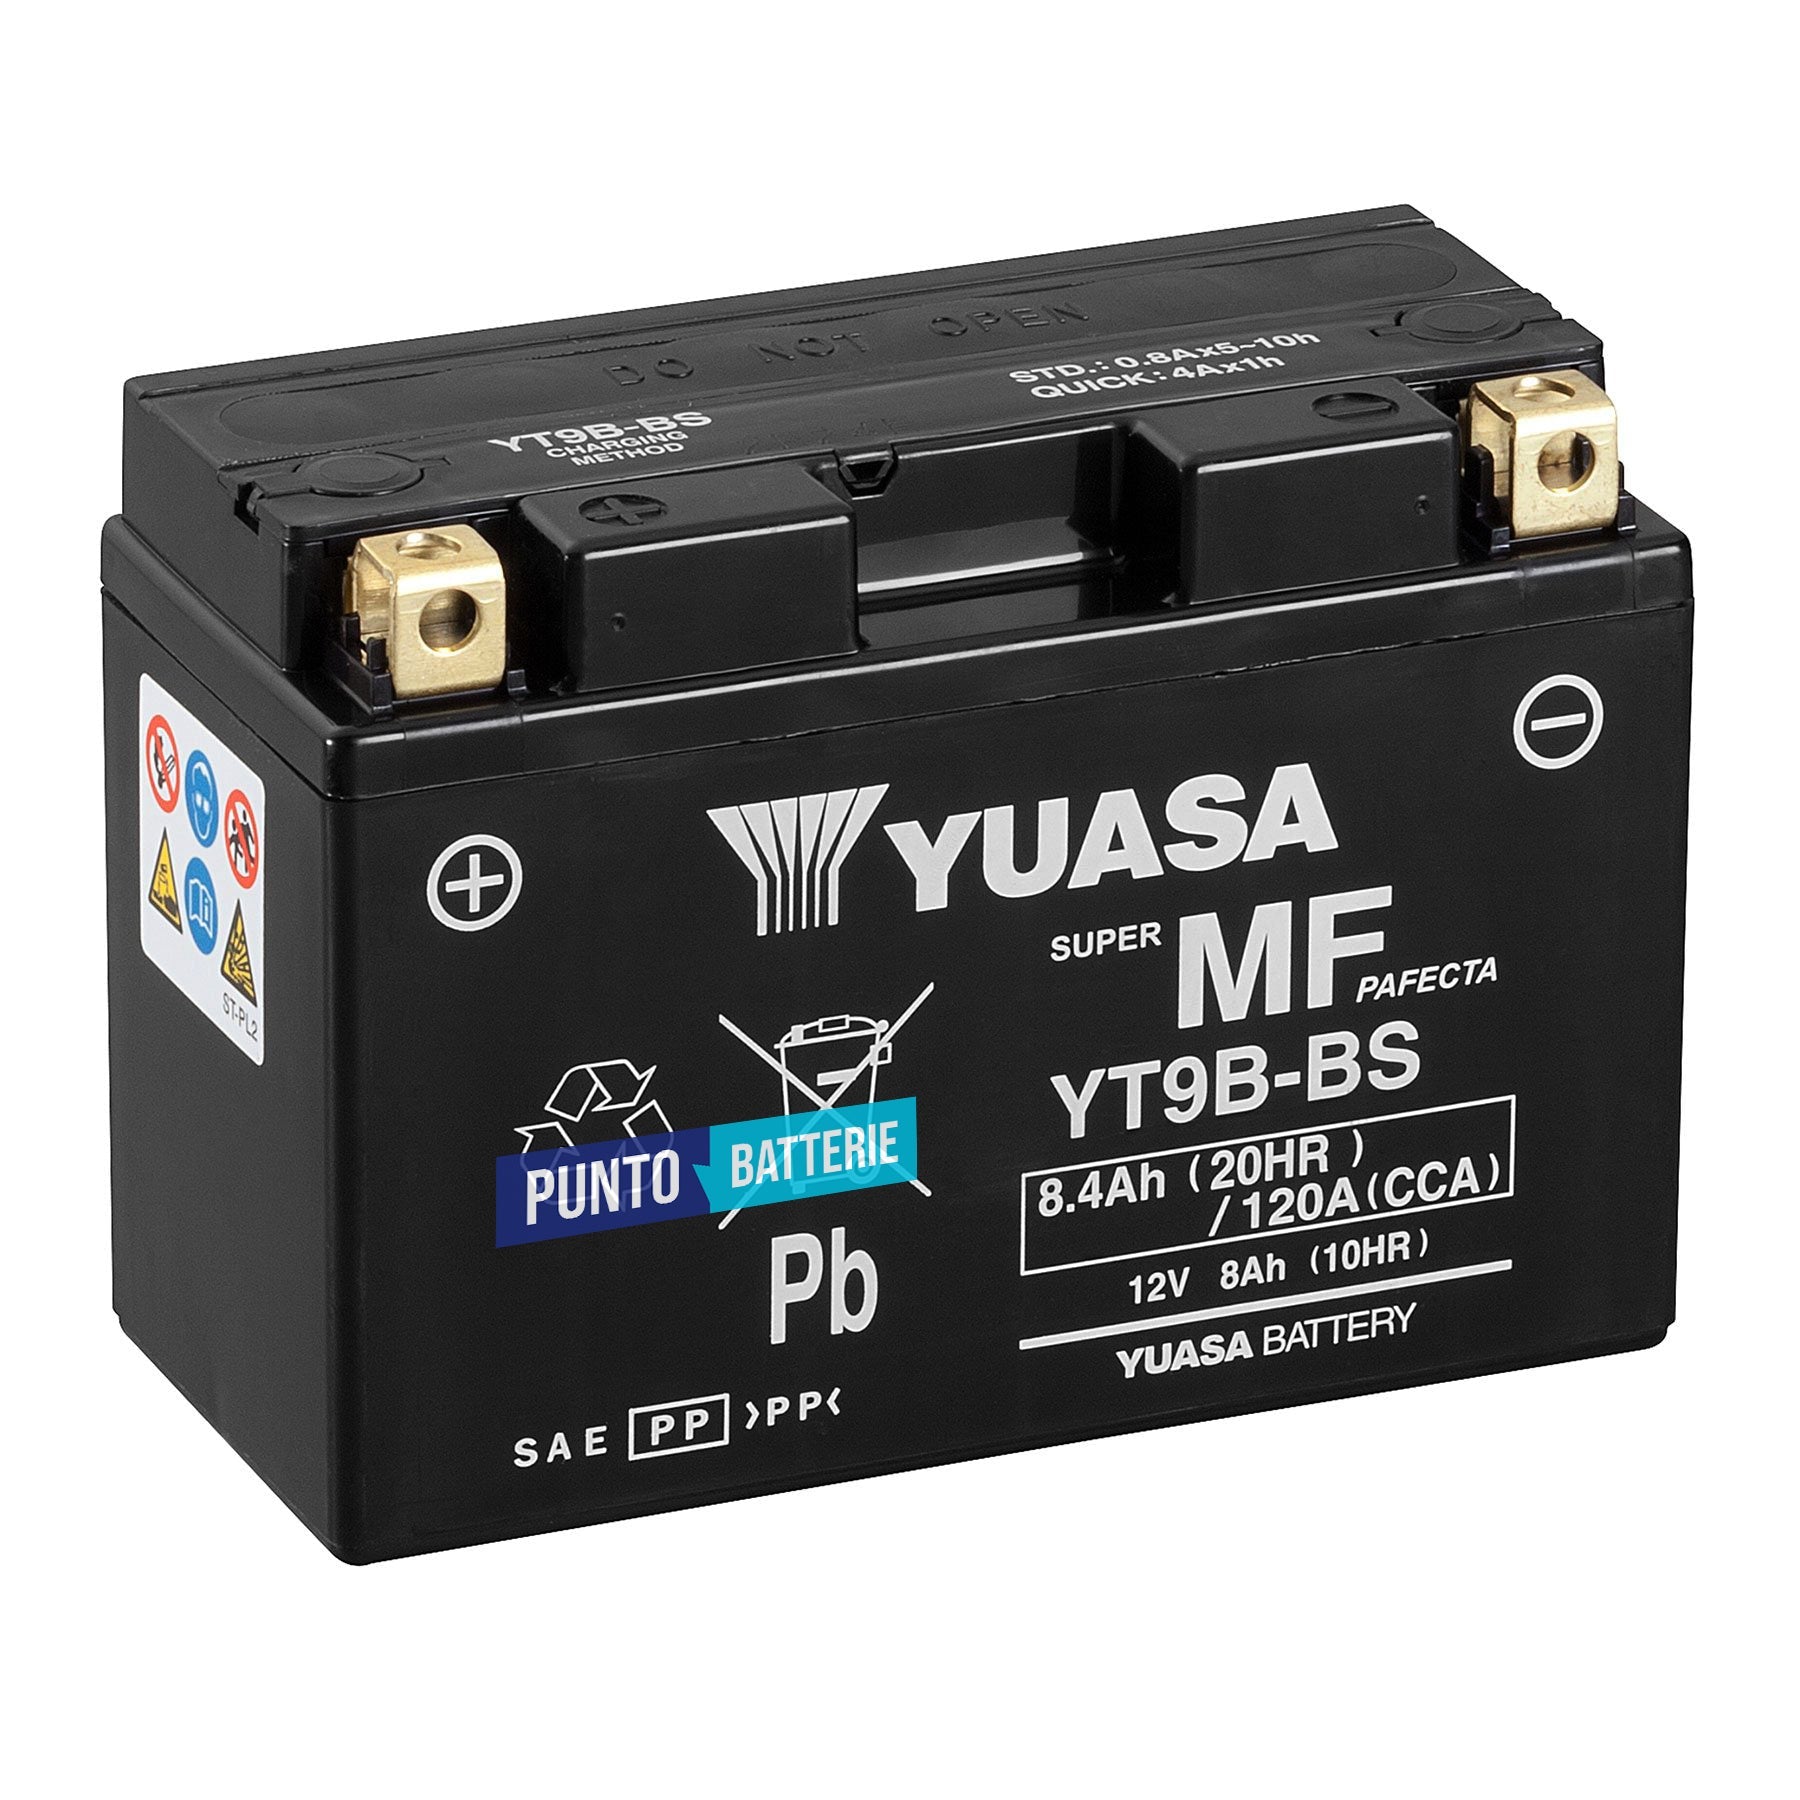 Batteria originale Yuasa YT YT9B-BS, dimensioni 150 x 70 x 105, polo positivo a sinistra, 12 volt, 8 amperora, 120 ampere. Batteria per moto, scooter e powersport.